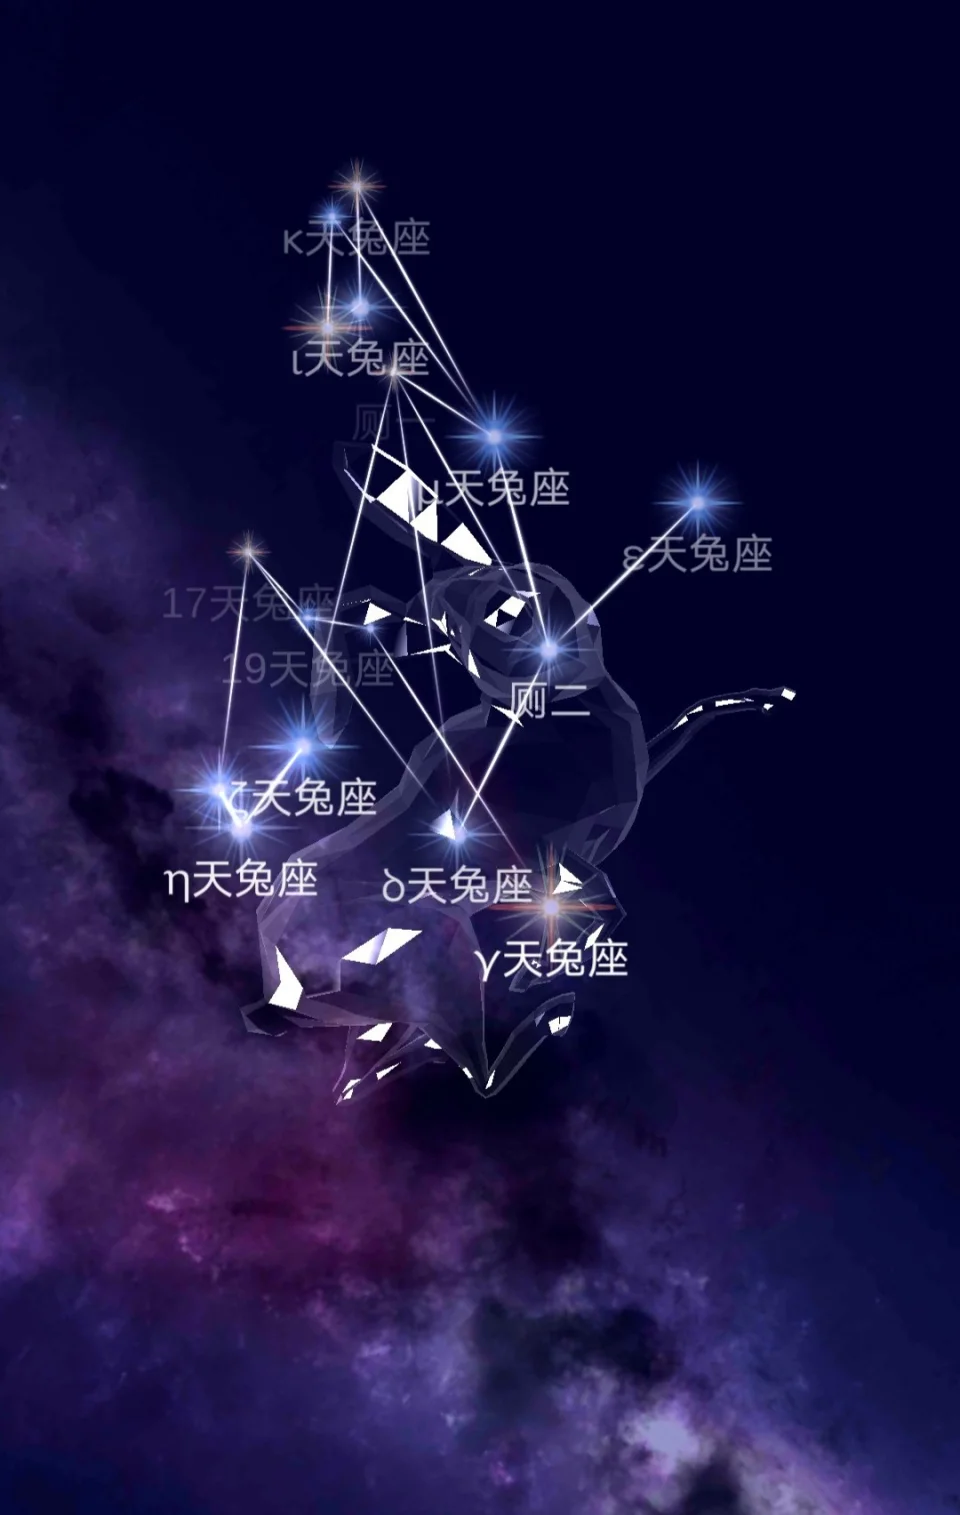 每个星座中的主星，连接起来，像这个星座名字中的动物或物品。星座符号是星座与人之间的图腾，诠释星座的意义和传递星座的能量。